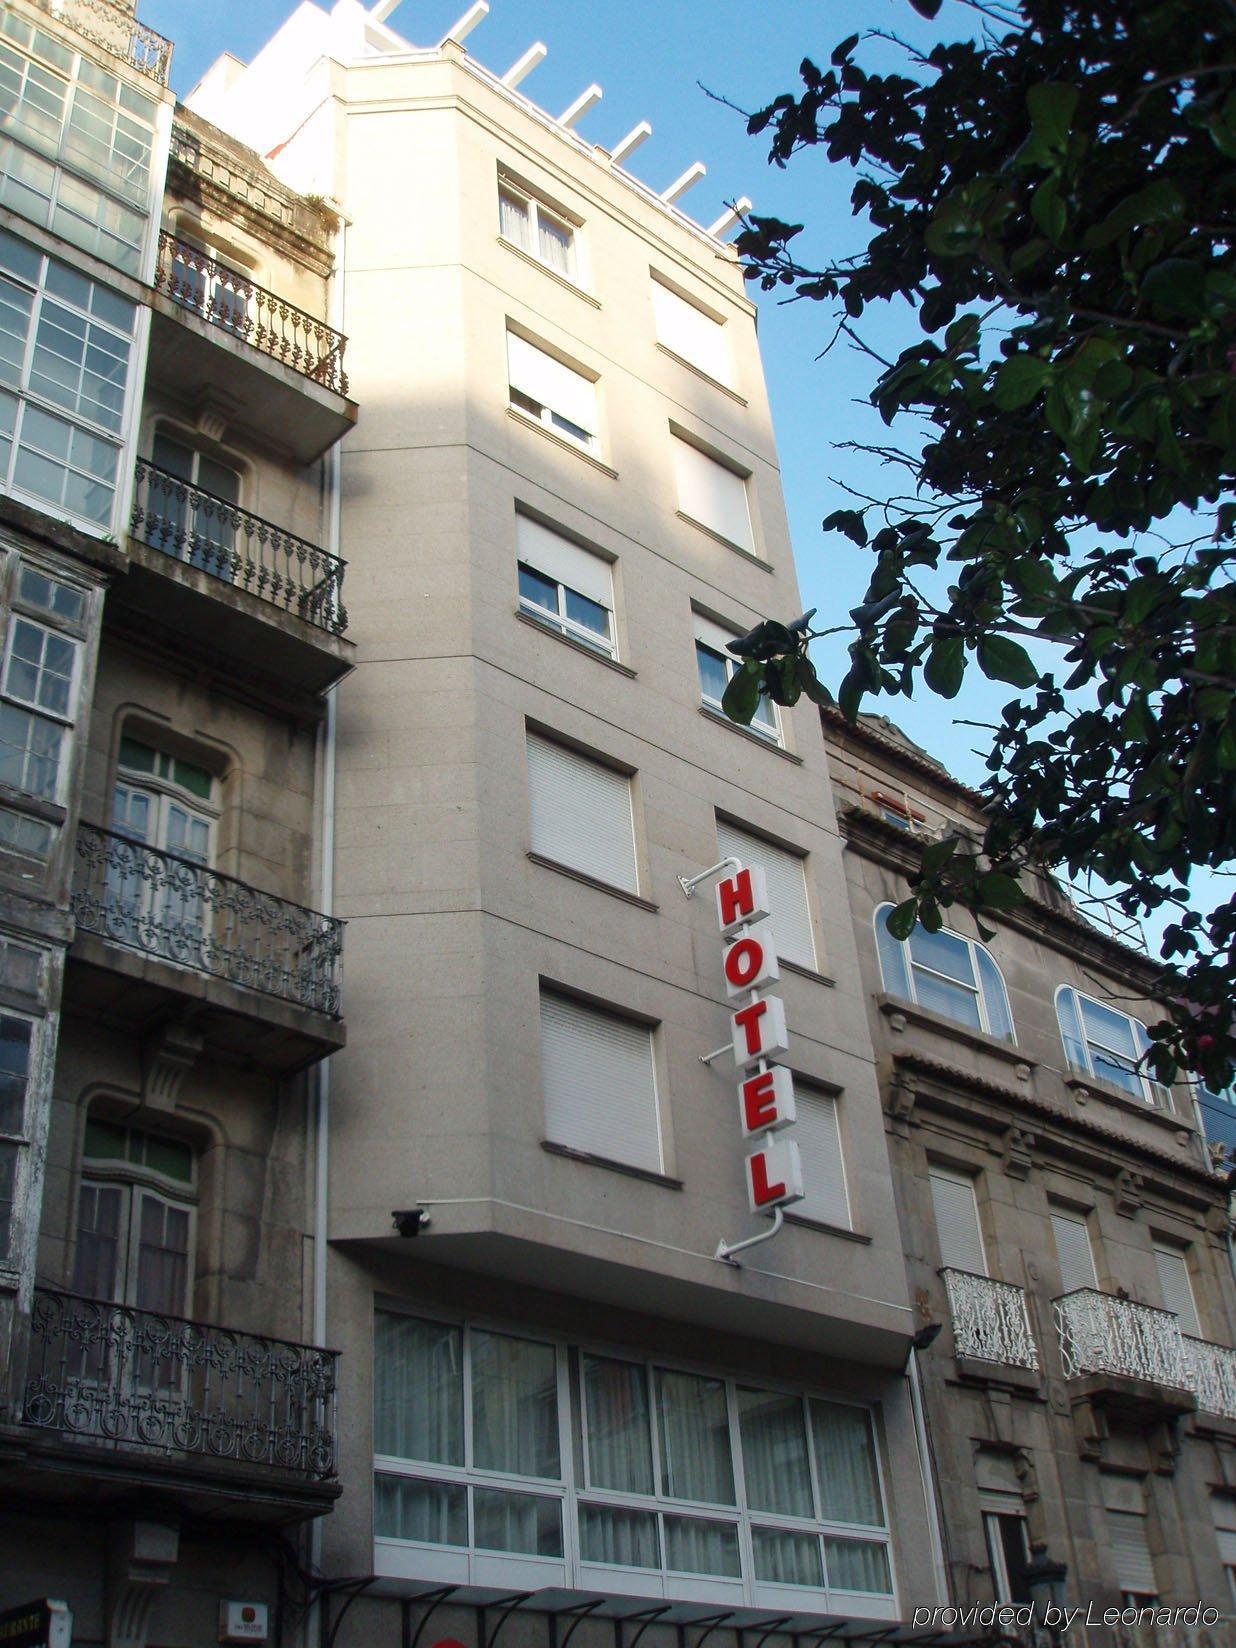 Hotel Vigo Plaza Exterior photo